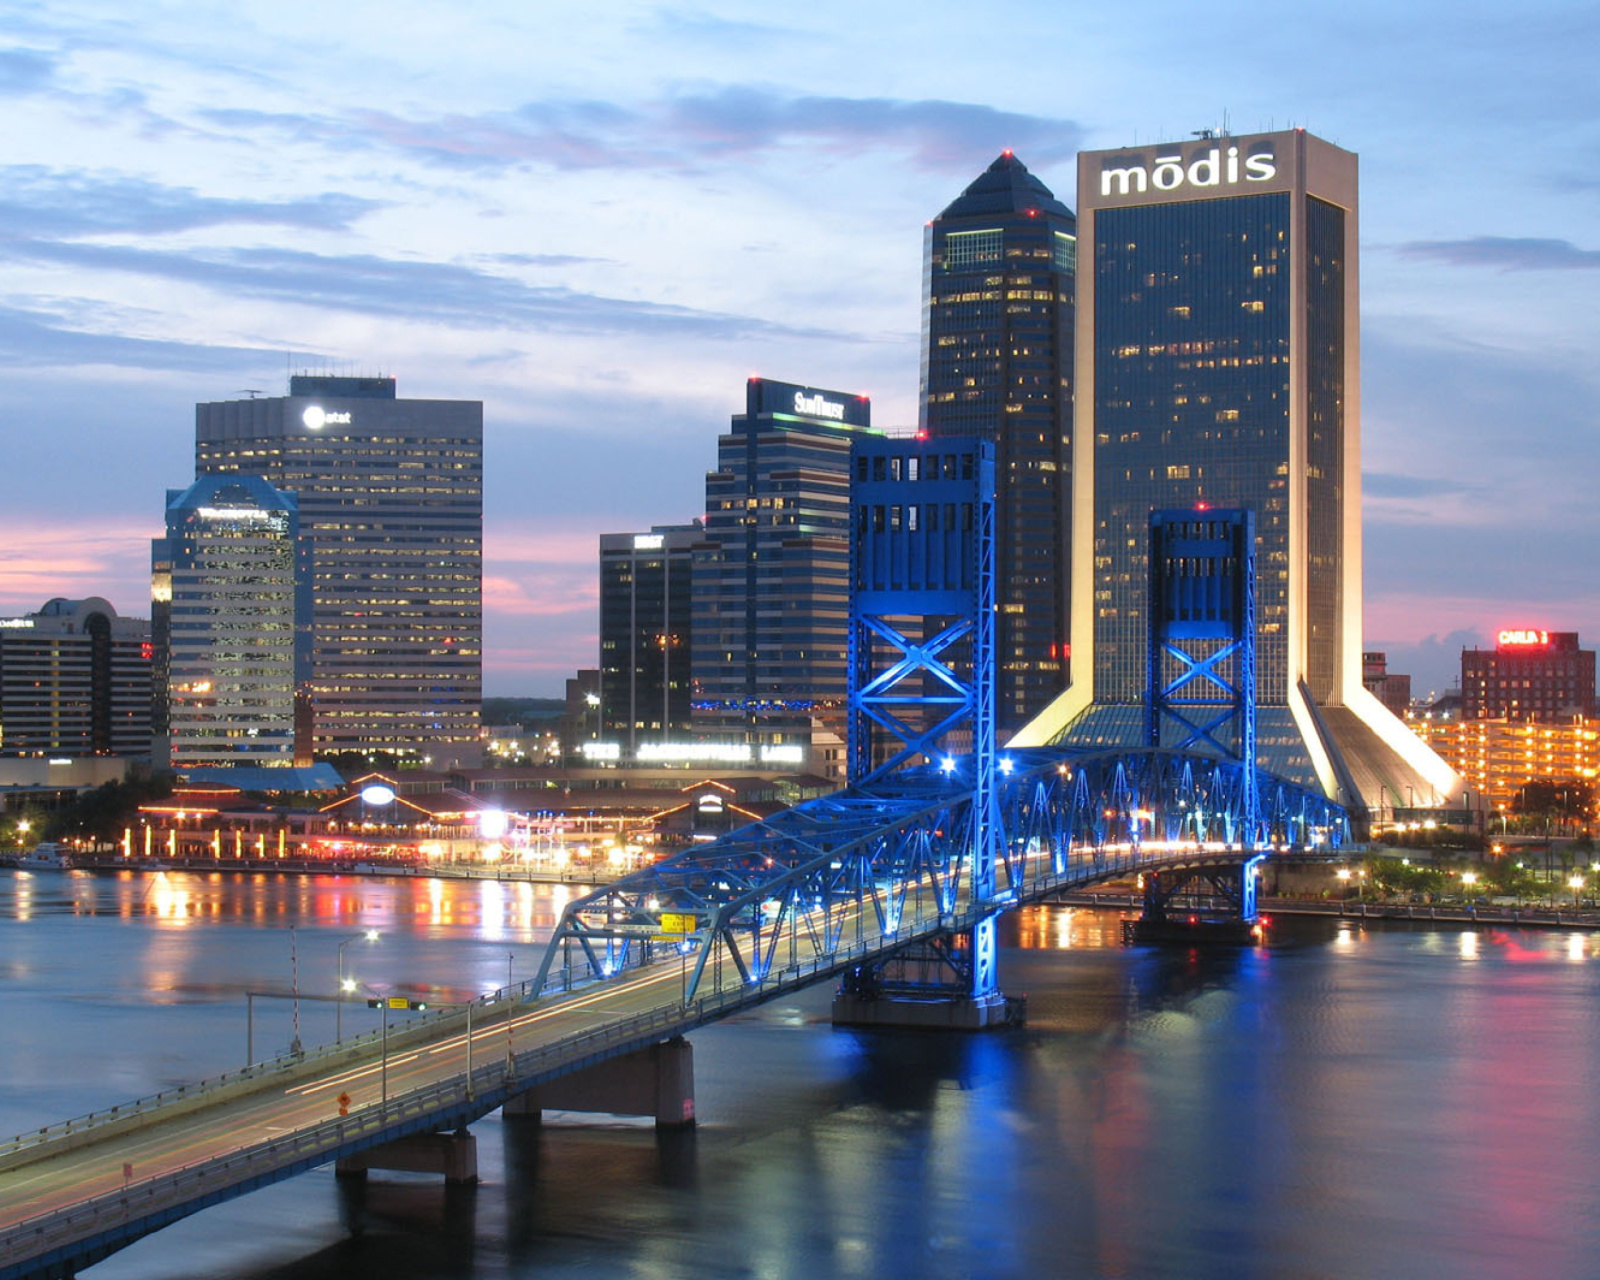 Jacksonville Evening screenshot #1 1600x1280